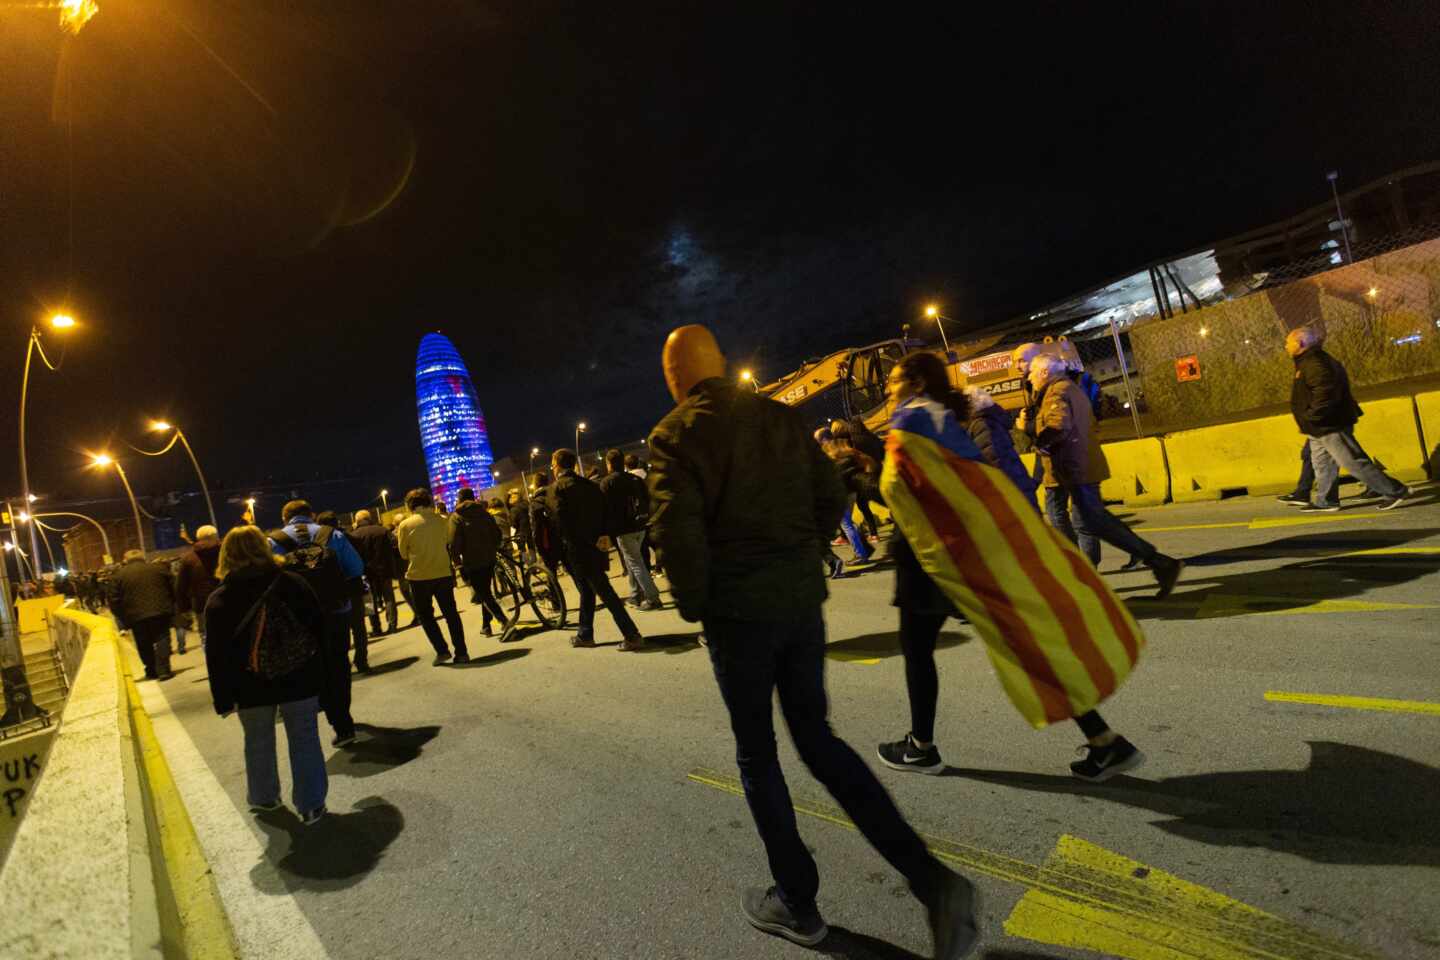 Los CDR vuelven a cortar el tráfico en Barcelona en otra jornada de protestas